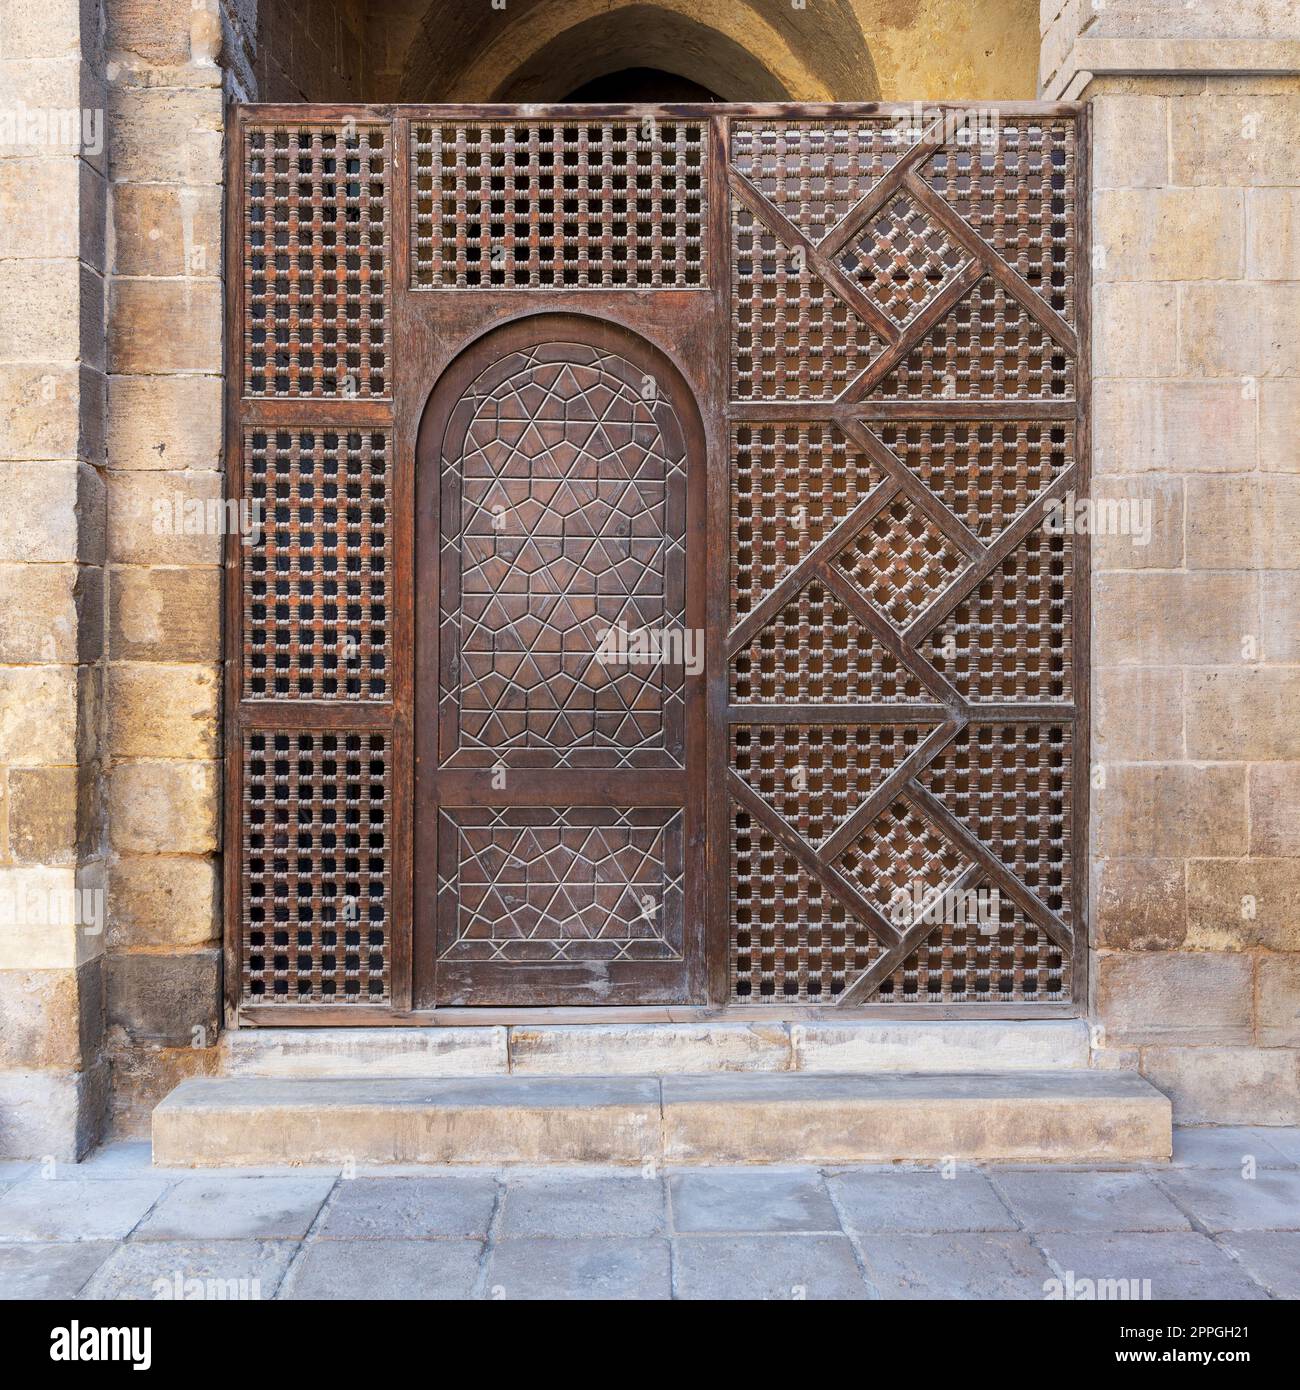 Mur en bois entrelacé, connu sous le nom de mashrabiya, avec porte ornée en bois Banque D'Images